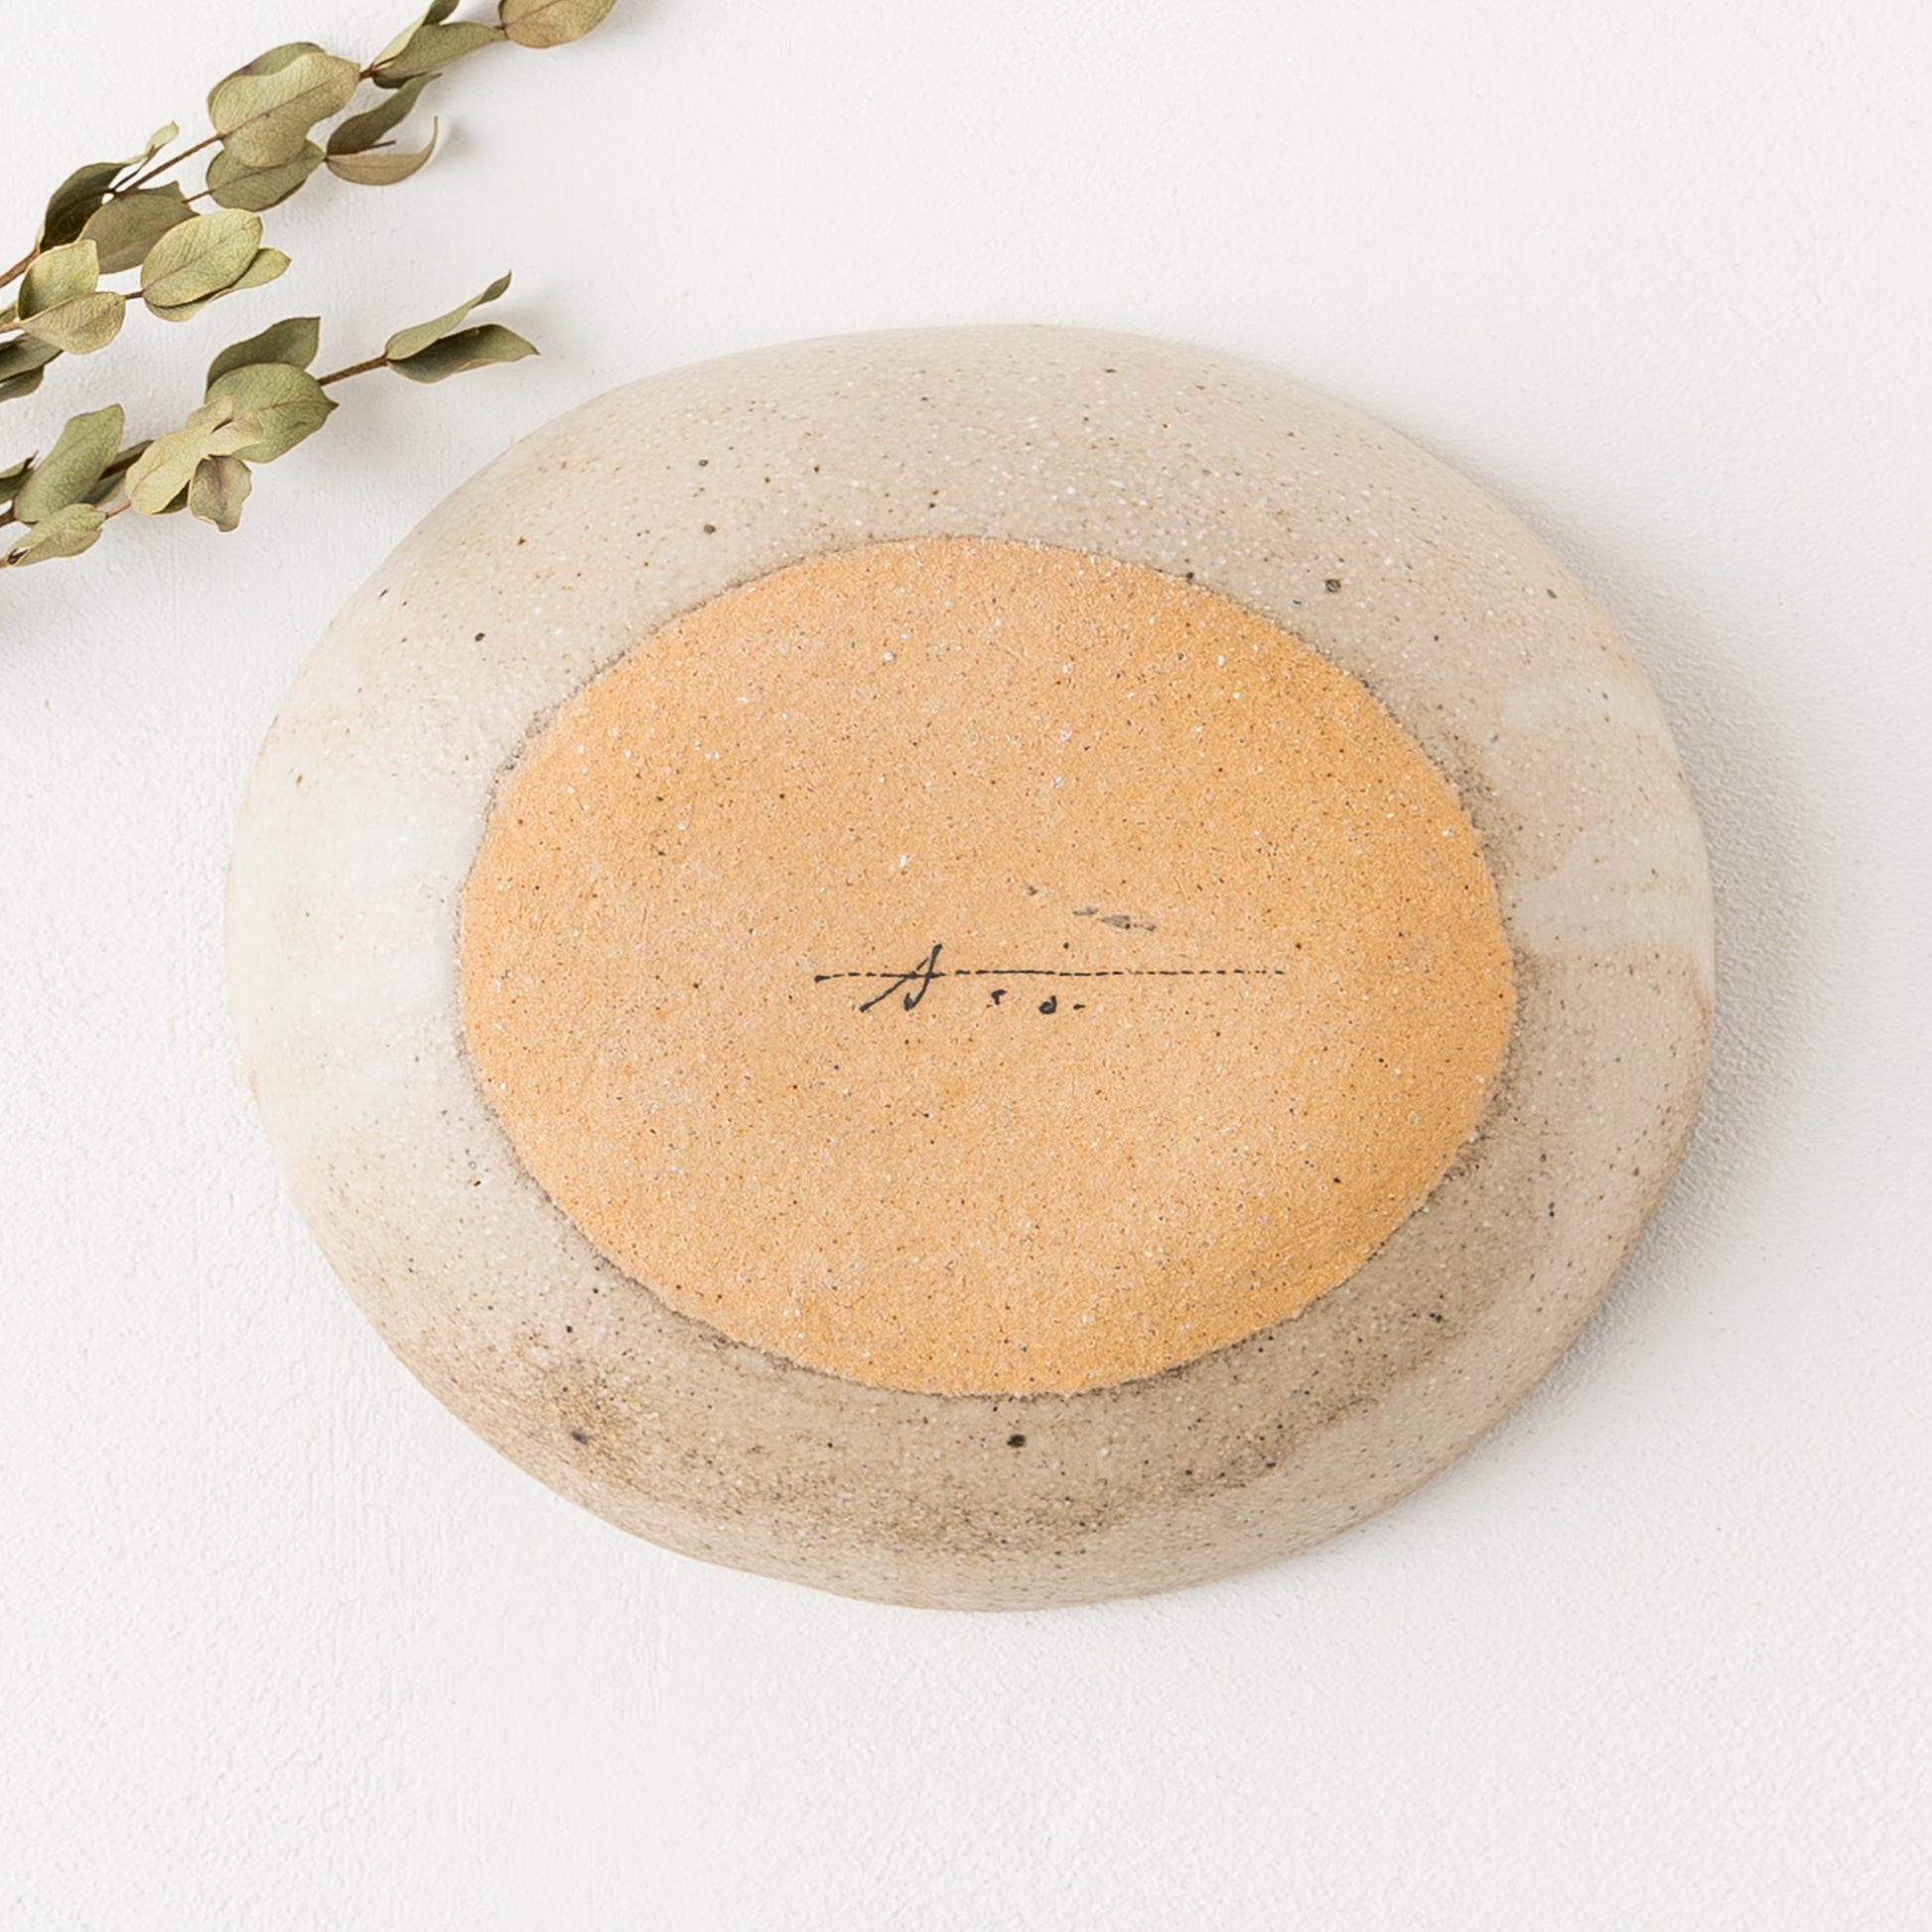 アースカラーがおしゃれで素敵な岡村朝子さんのお花柄の楕円皿